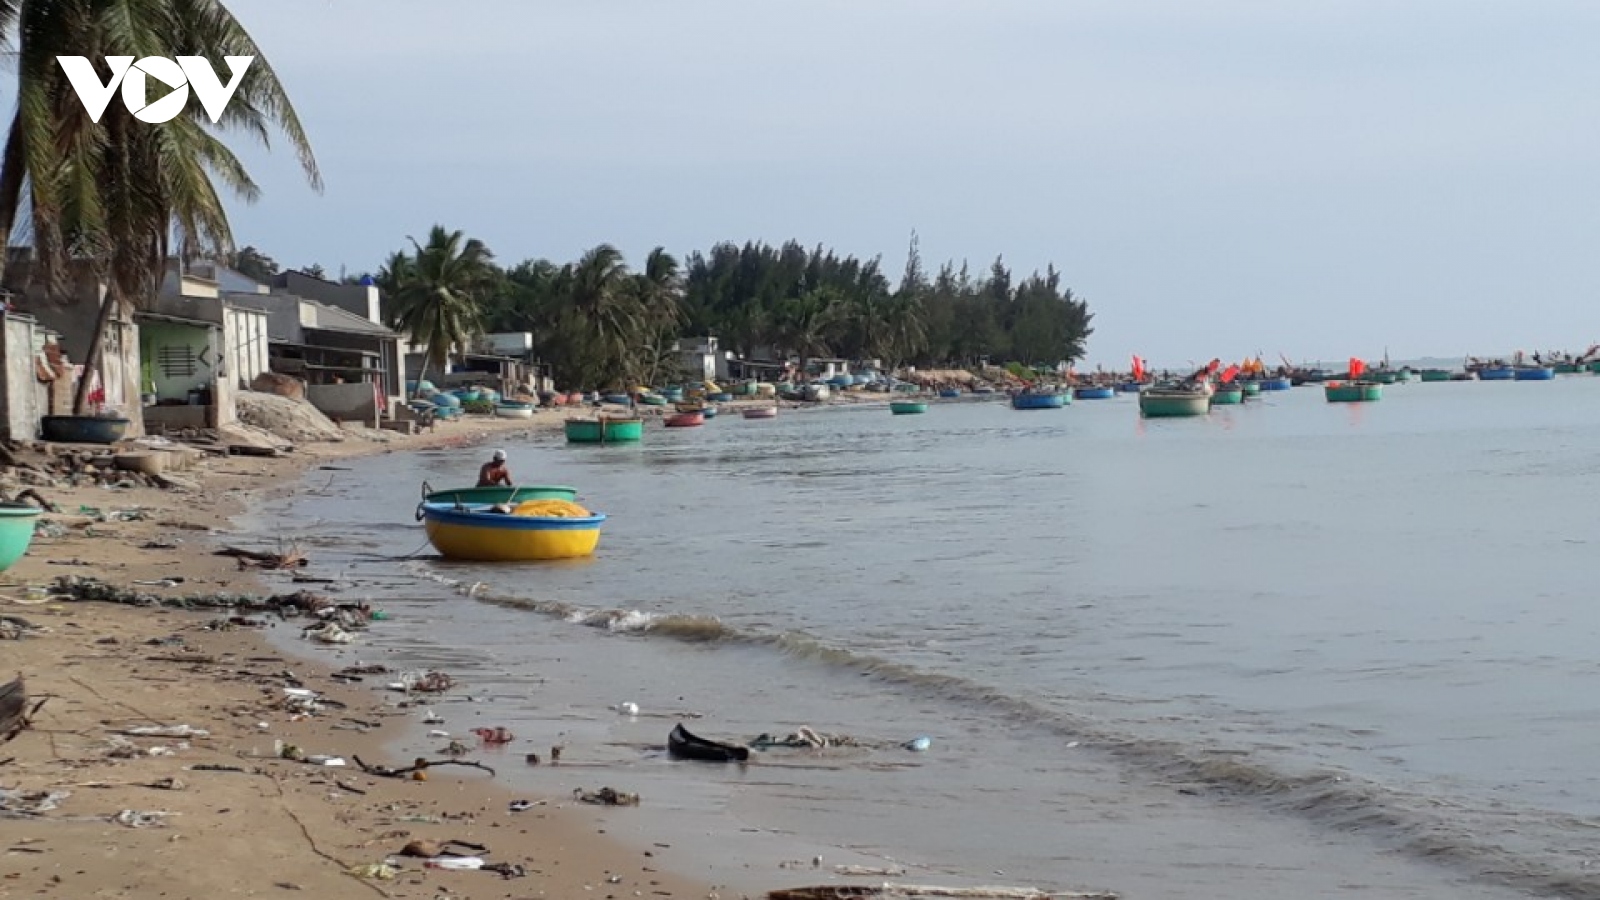 Bão số 9 ở Bình Thuận khiến 1 thuyền bị sóng đánh chìm